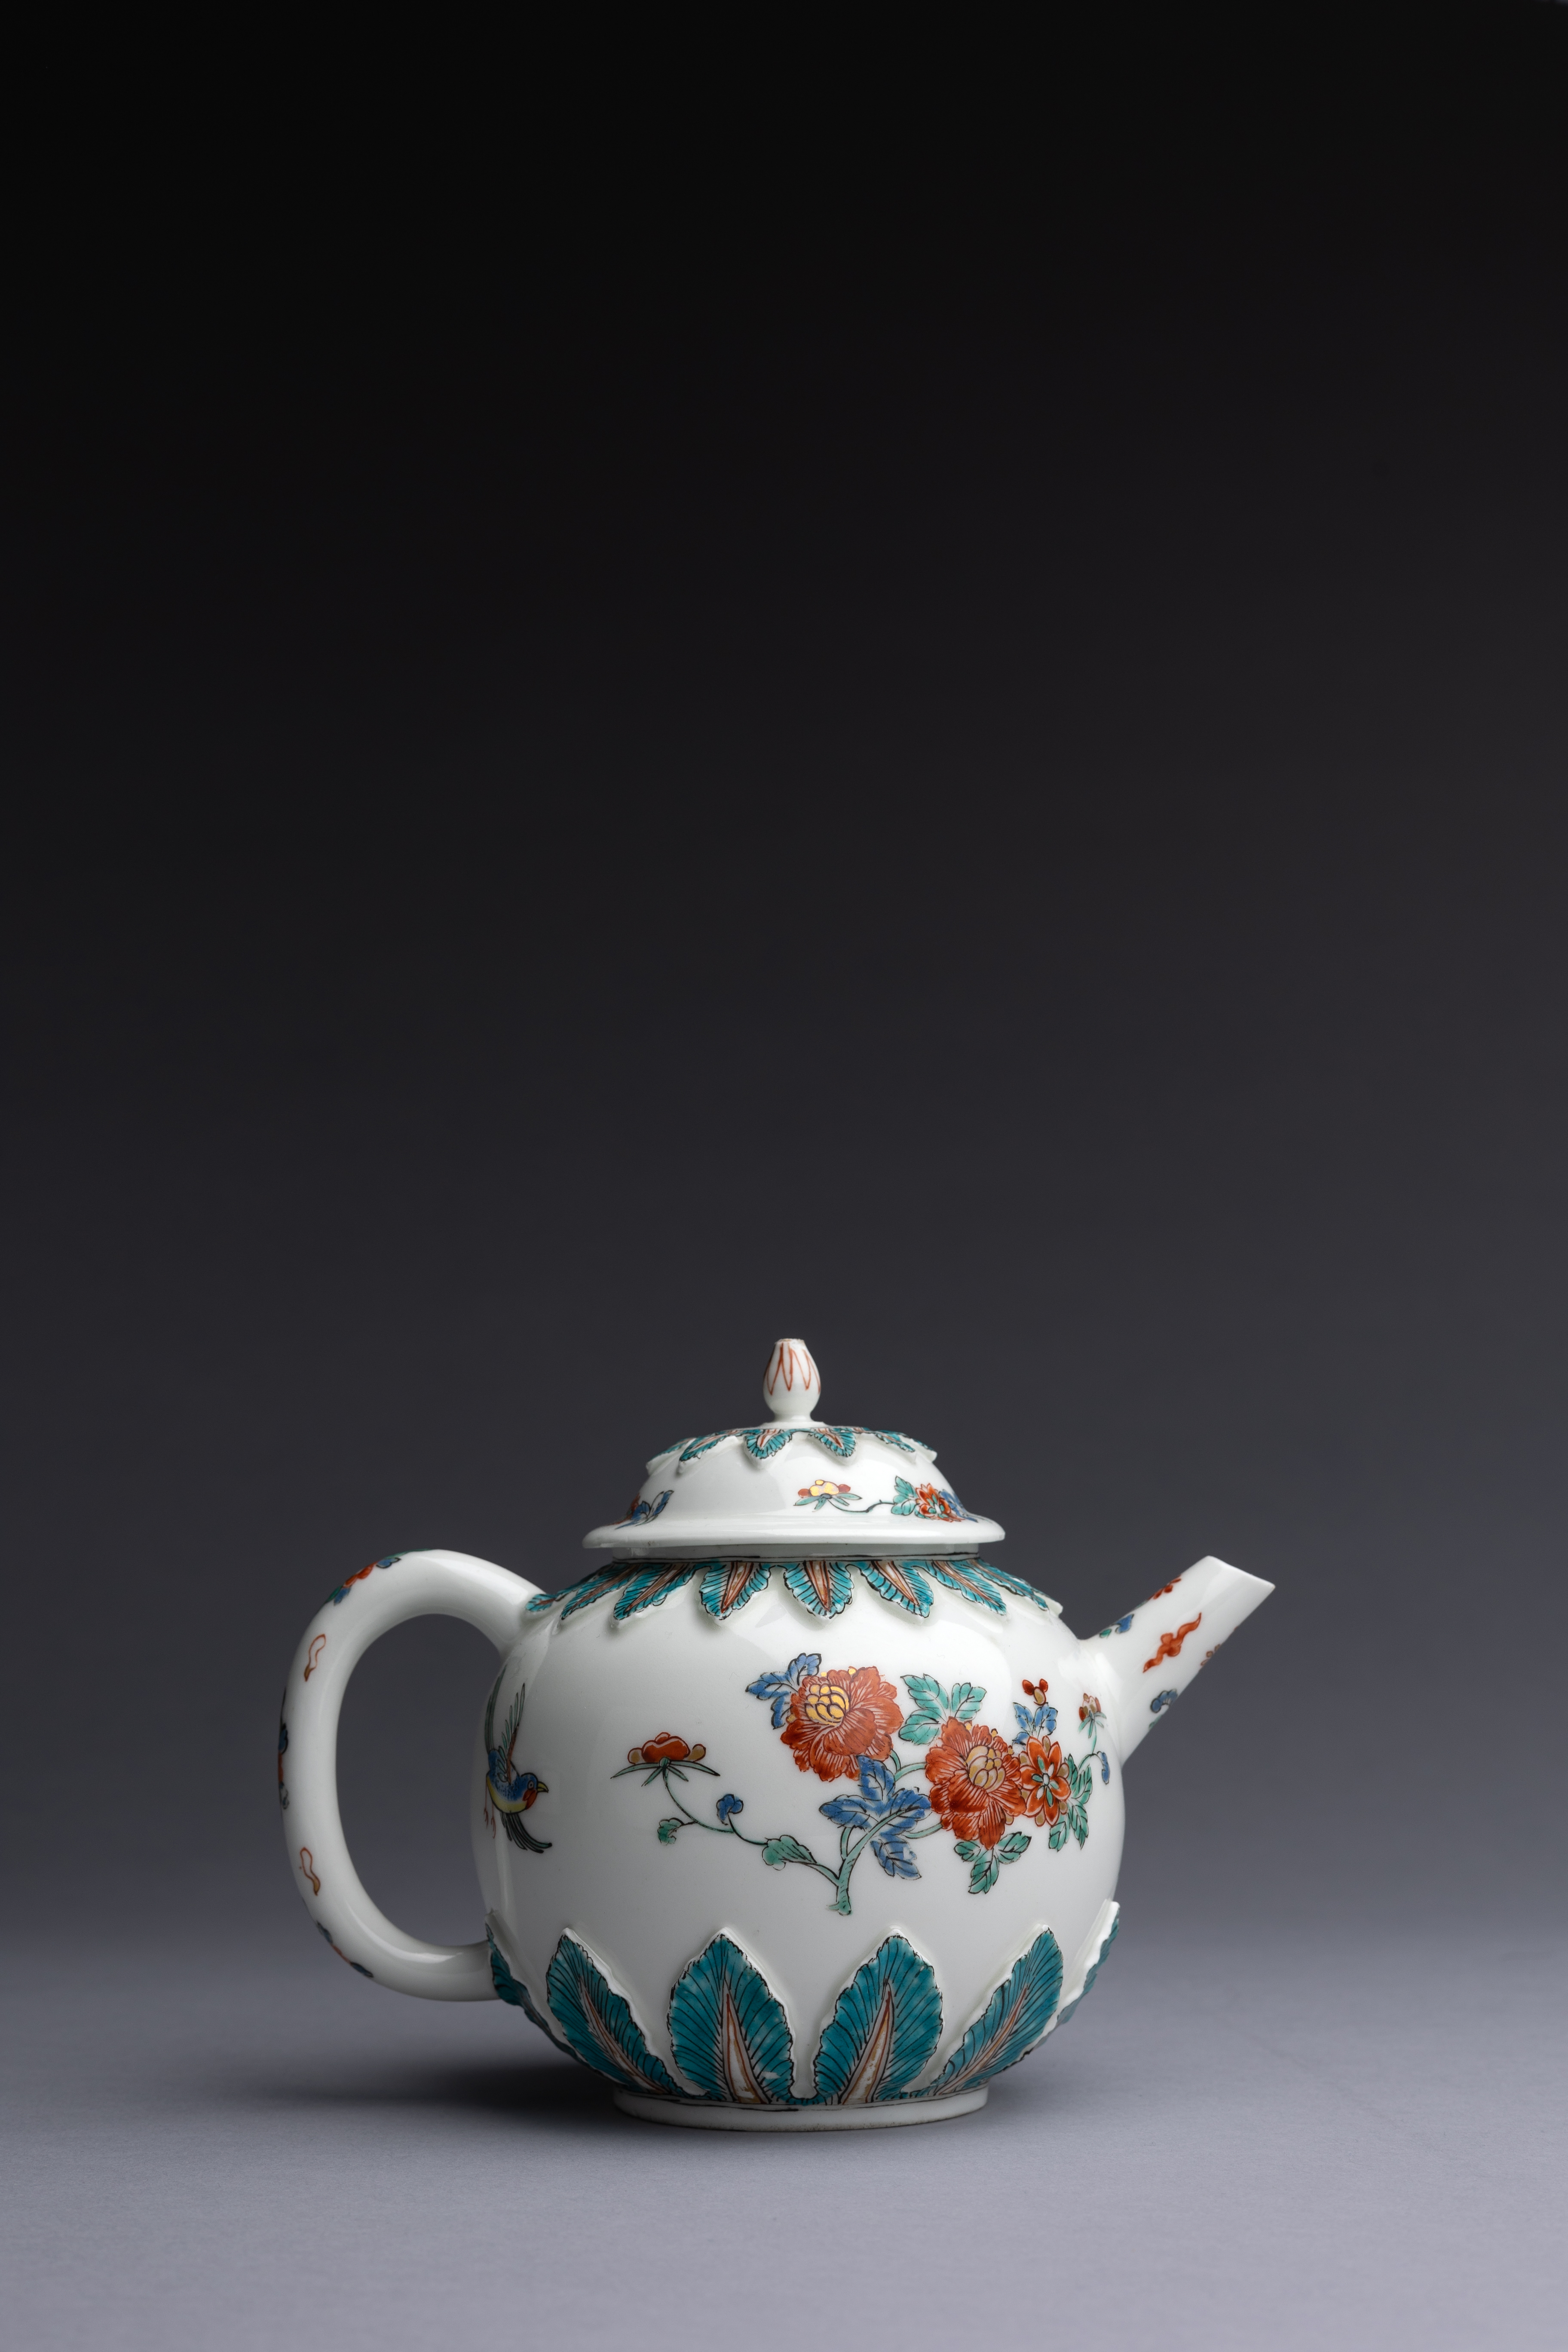 Meissen Porcelain Teapot